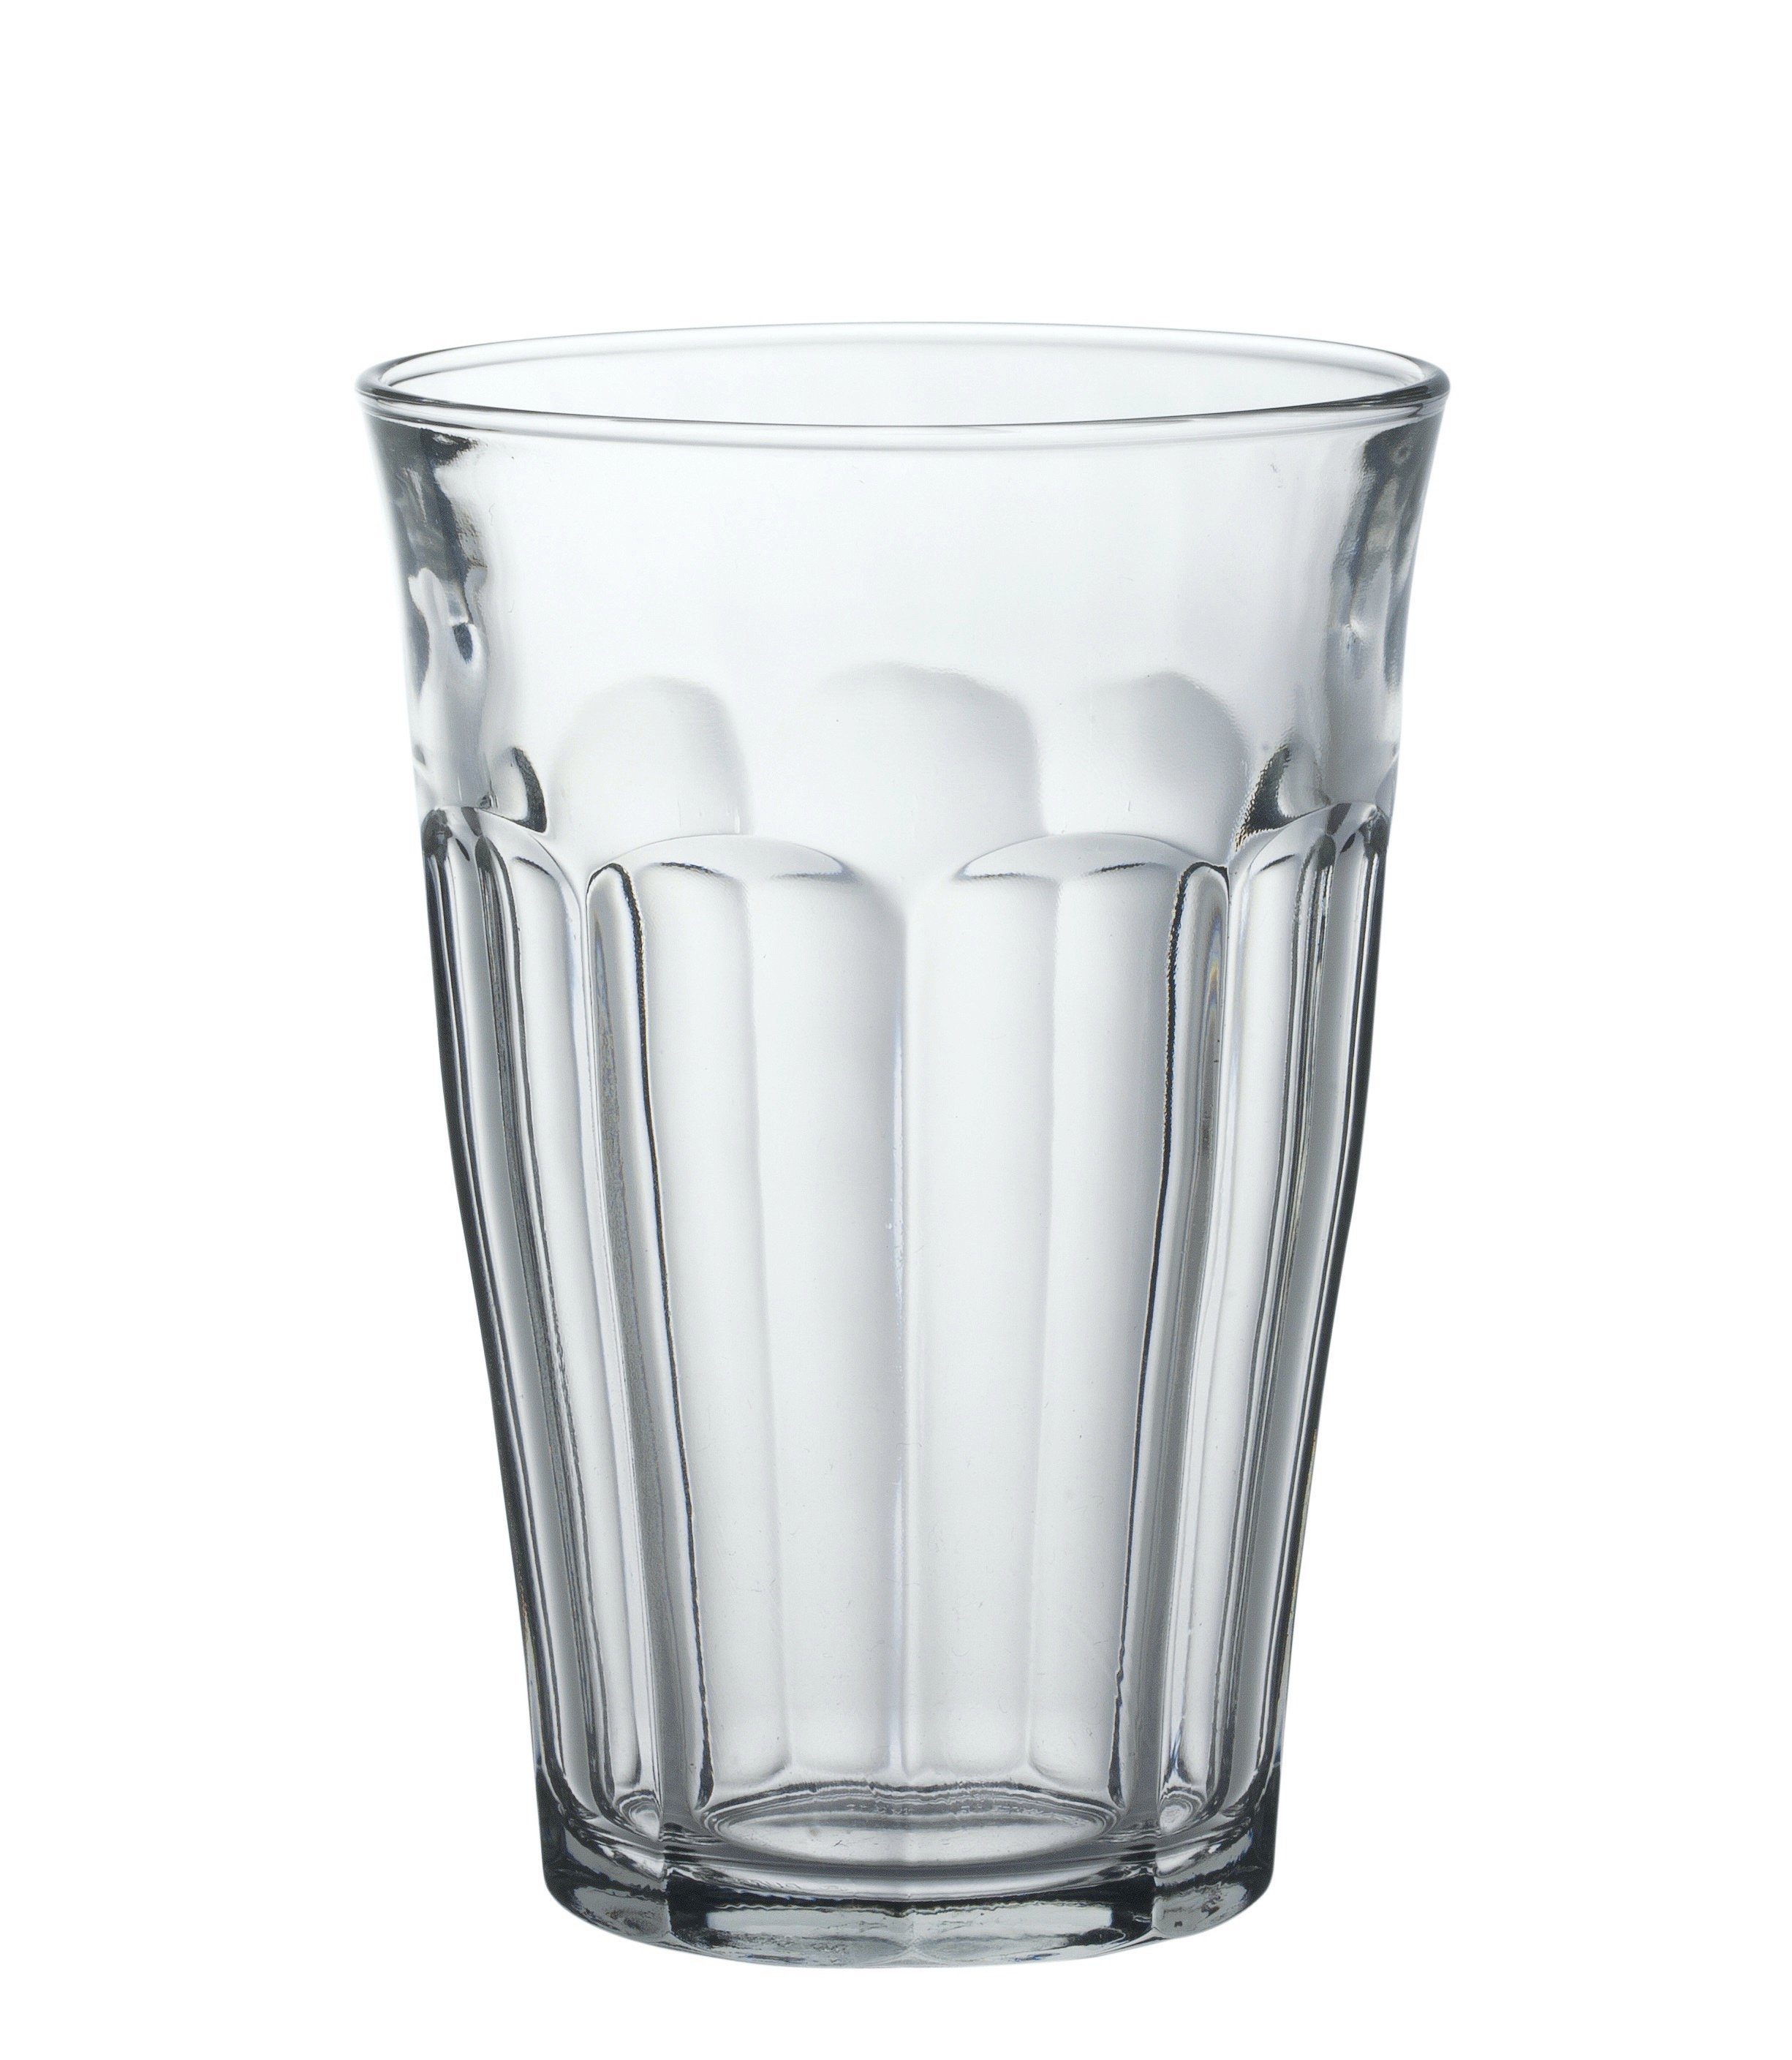 Transparent gehärtet, 360ml Stück Füllstrich Trinkglas Glas 03l 6 Glas 0.3l Tumbler-Glas Duralex Tumbler bei Picardie, gehärtet